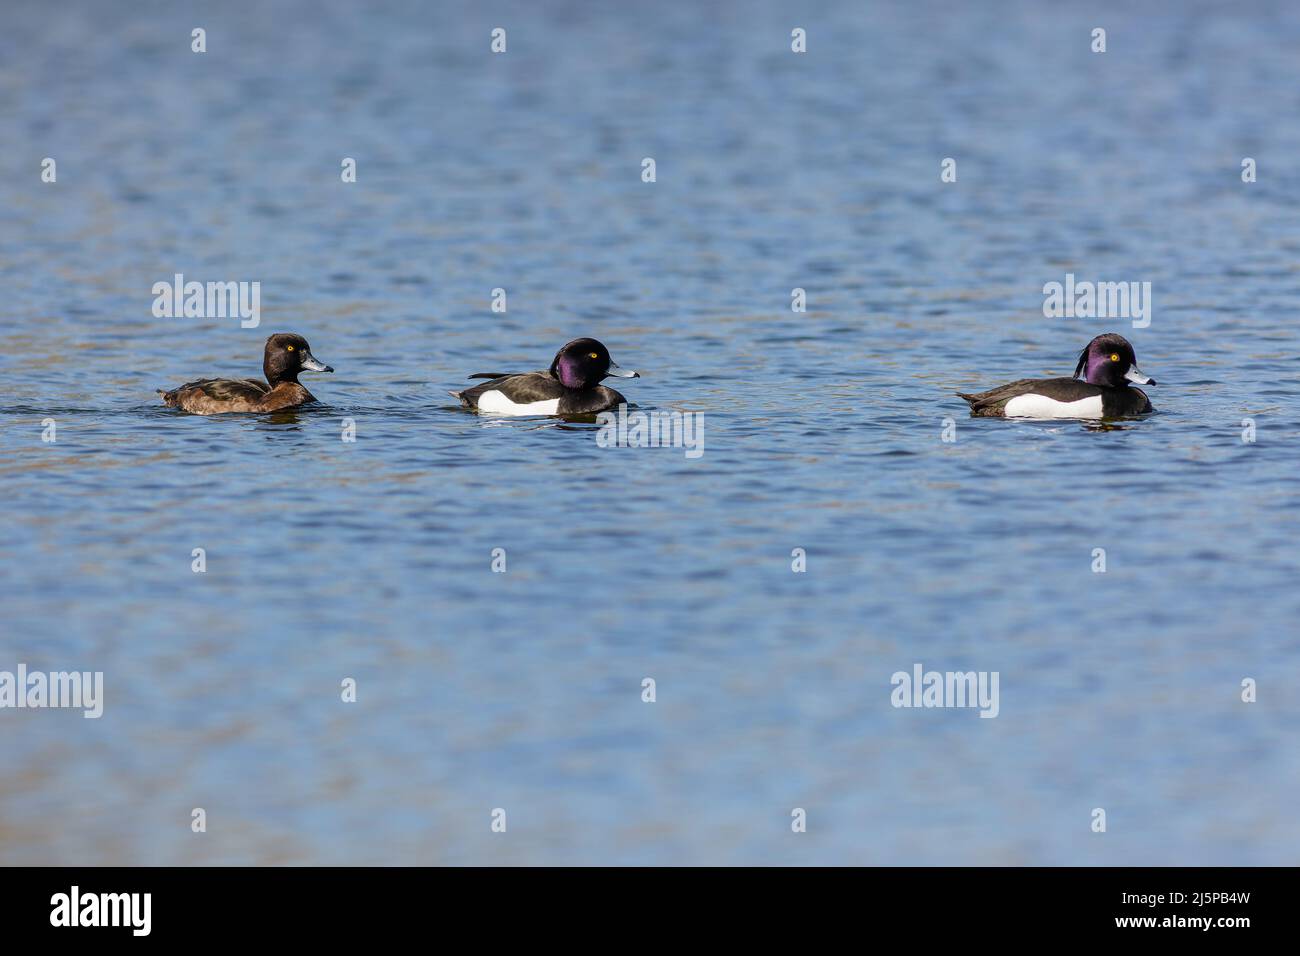 Trois canards touffetés, deux mâles noirs et blancs et une femelle brune, nageant dans une rangée d'eau bleue le jour ensoleillé du printemps. Banque D'Images